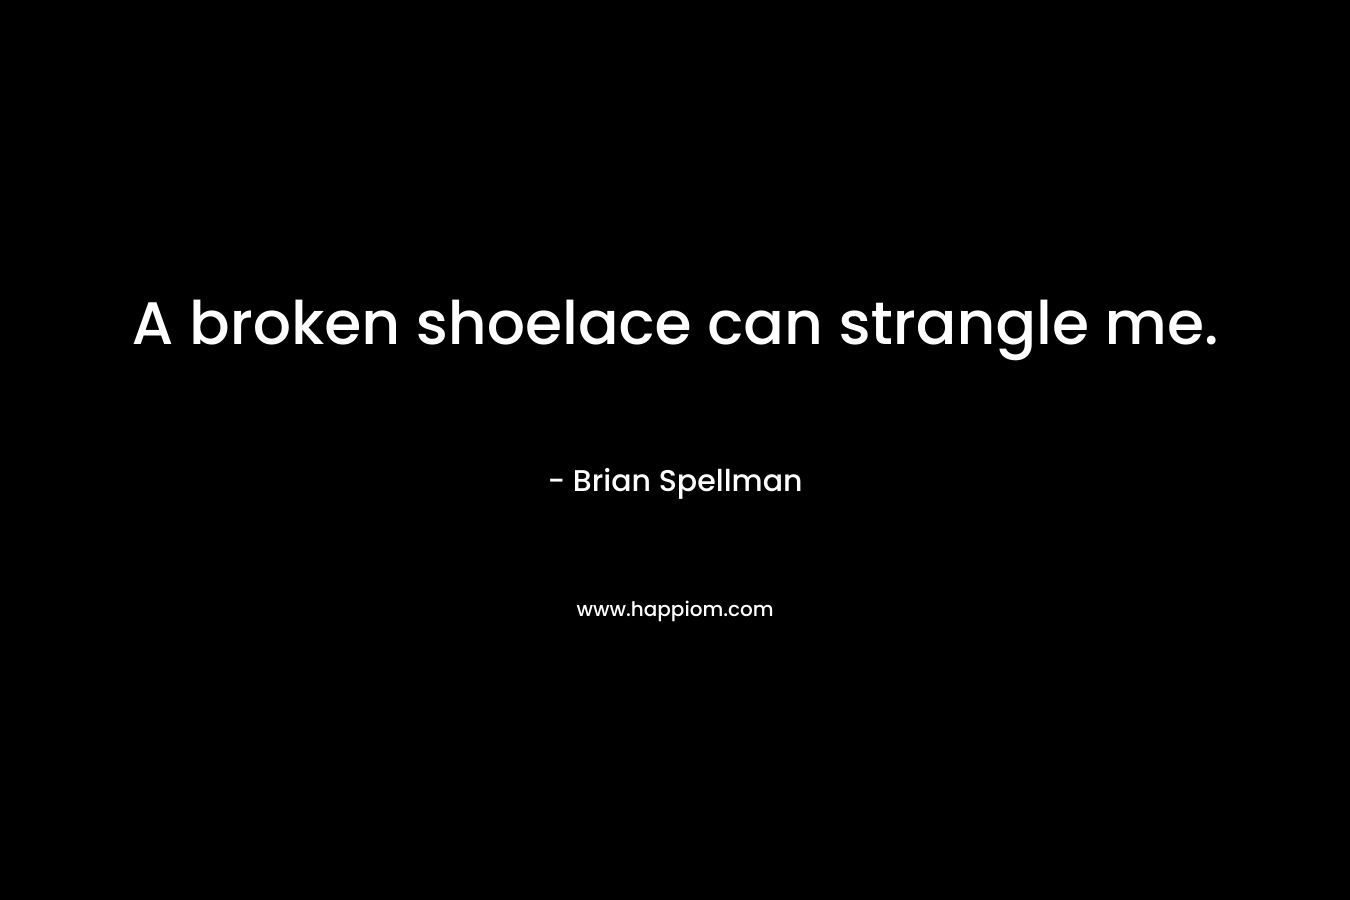 A broken shoelace can strangle me.